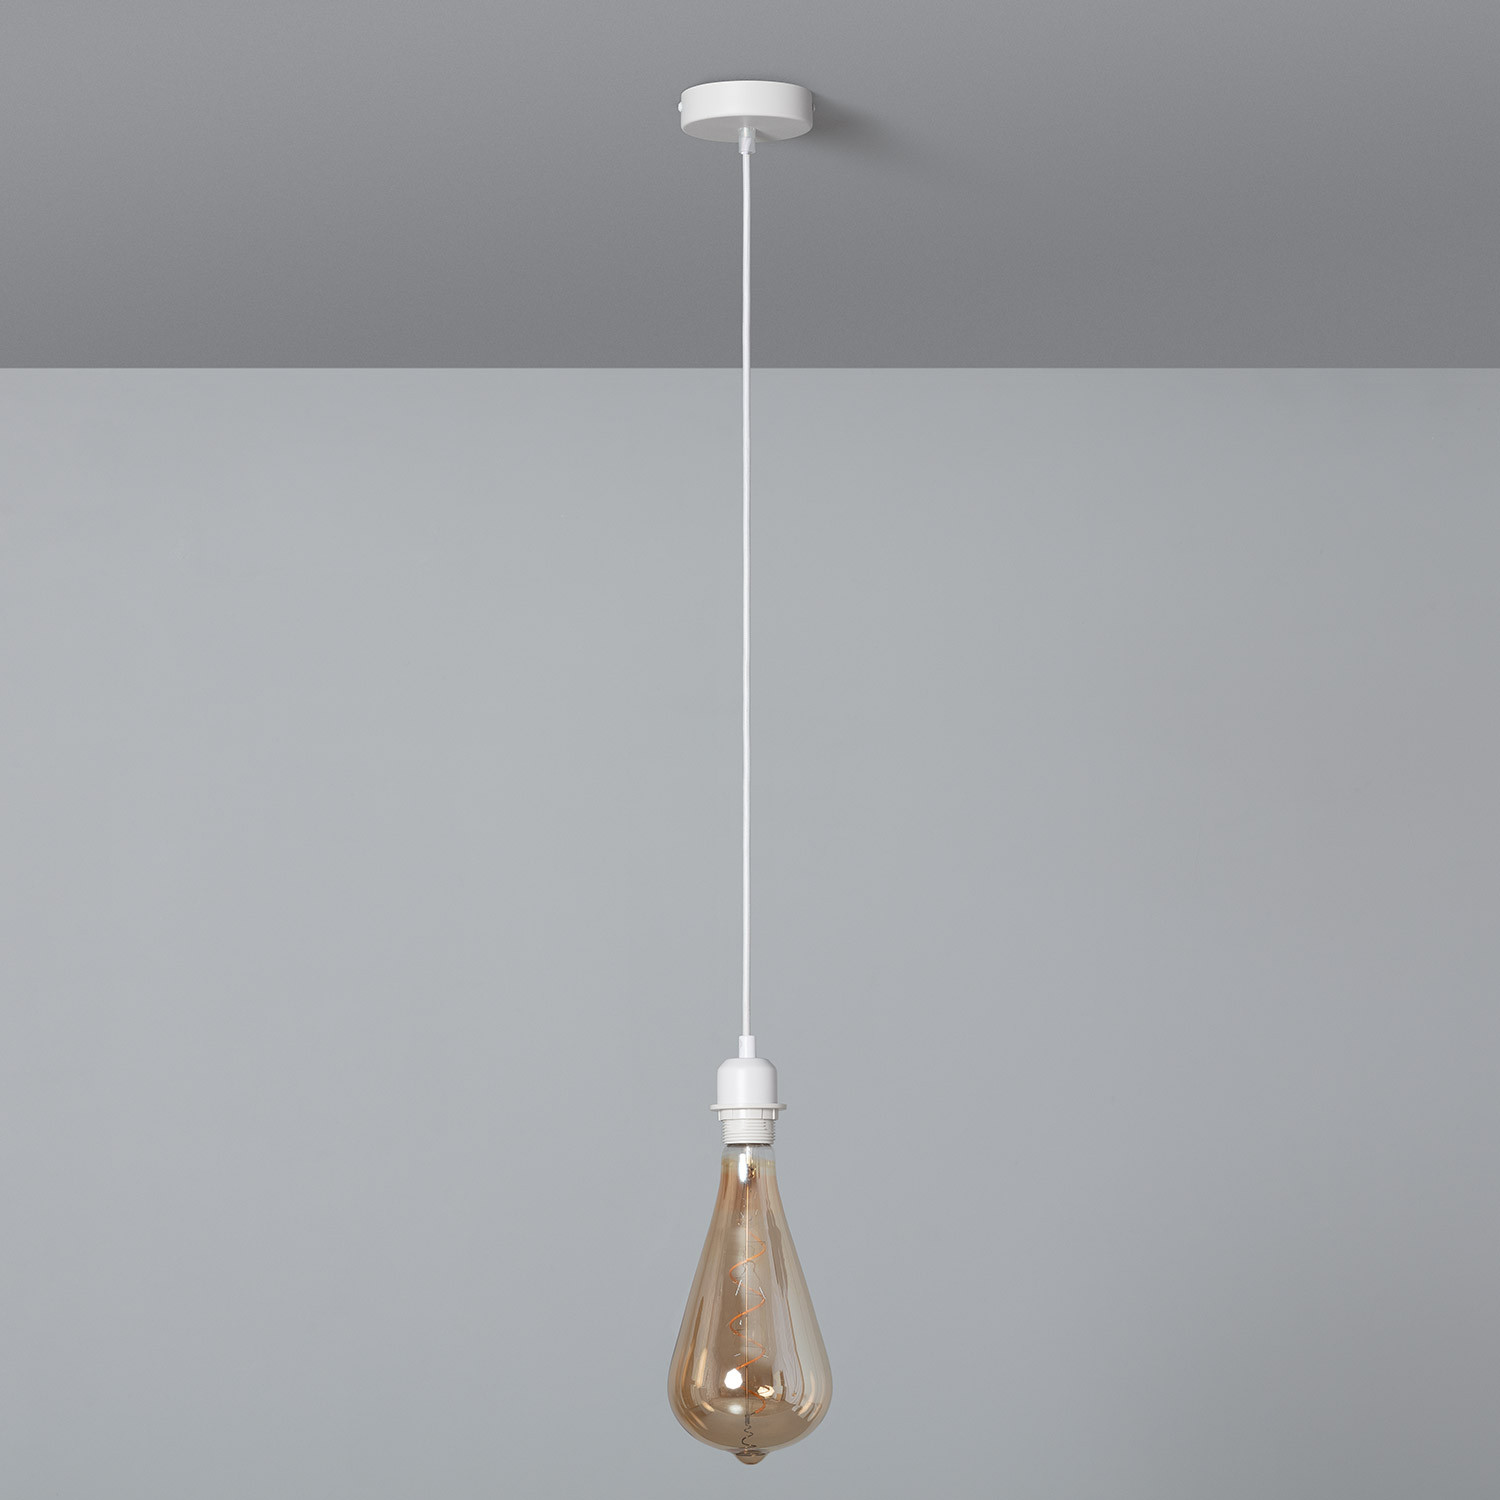 Trunk bibliotheek Continentaal Stof Plafondplaat met Fitting voor Hanglamp met Witte Textielkabel - Ledkia